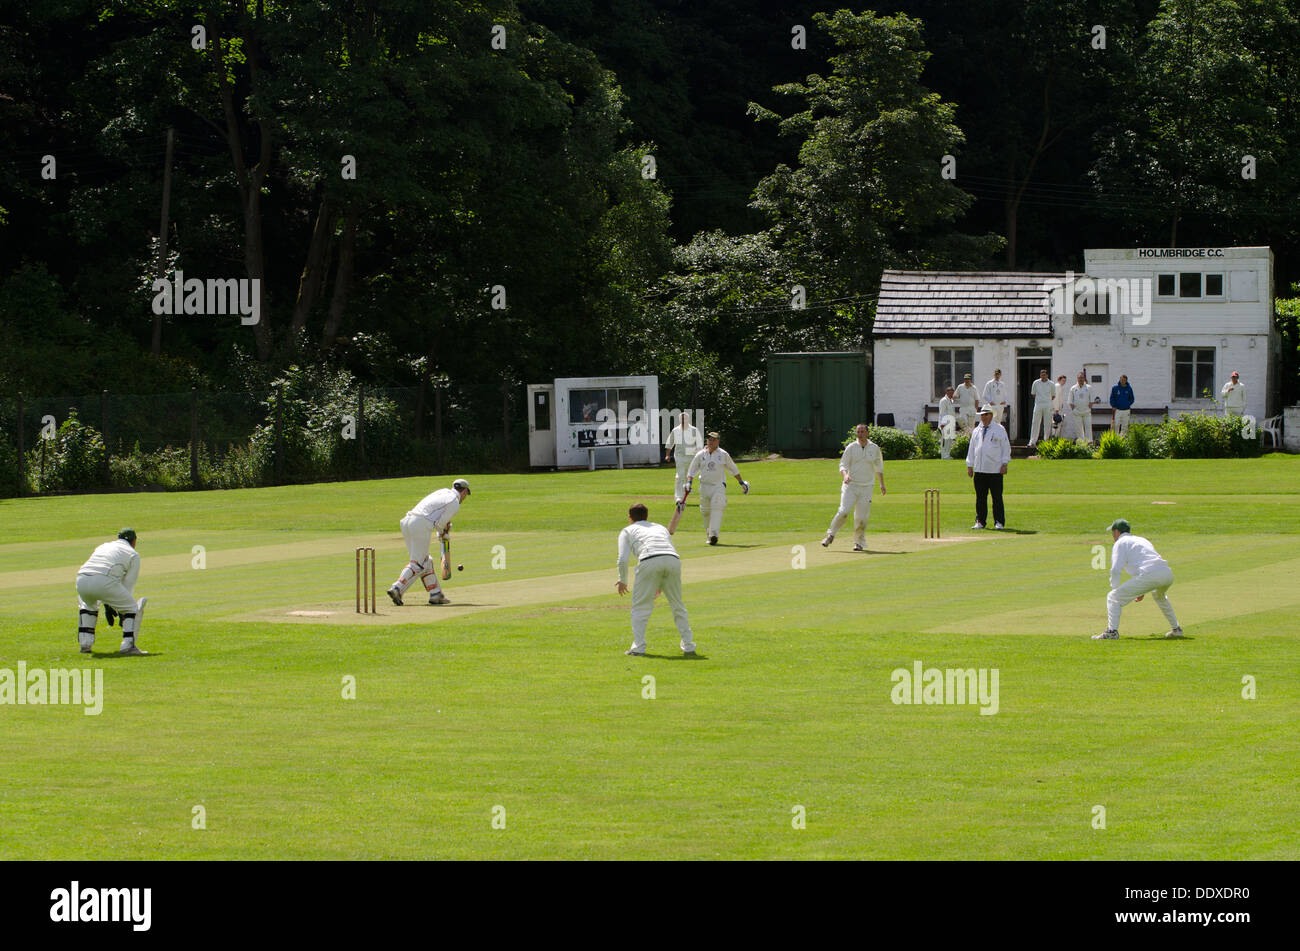 Aldea de escena en Holmbridge cricket Cricket Club en West Yorkshire, mostrando el clubhouse en el fondo Foto de stock